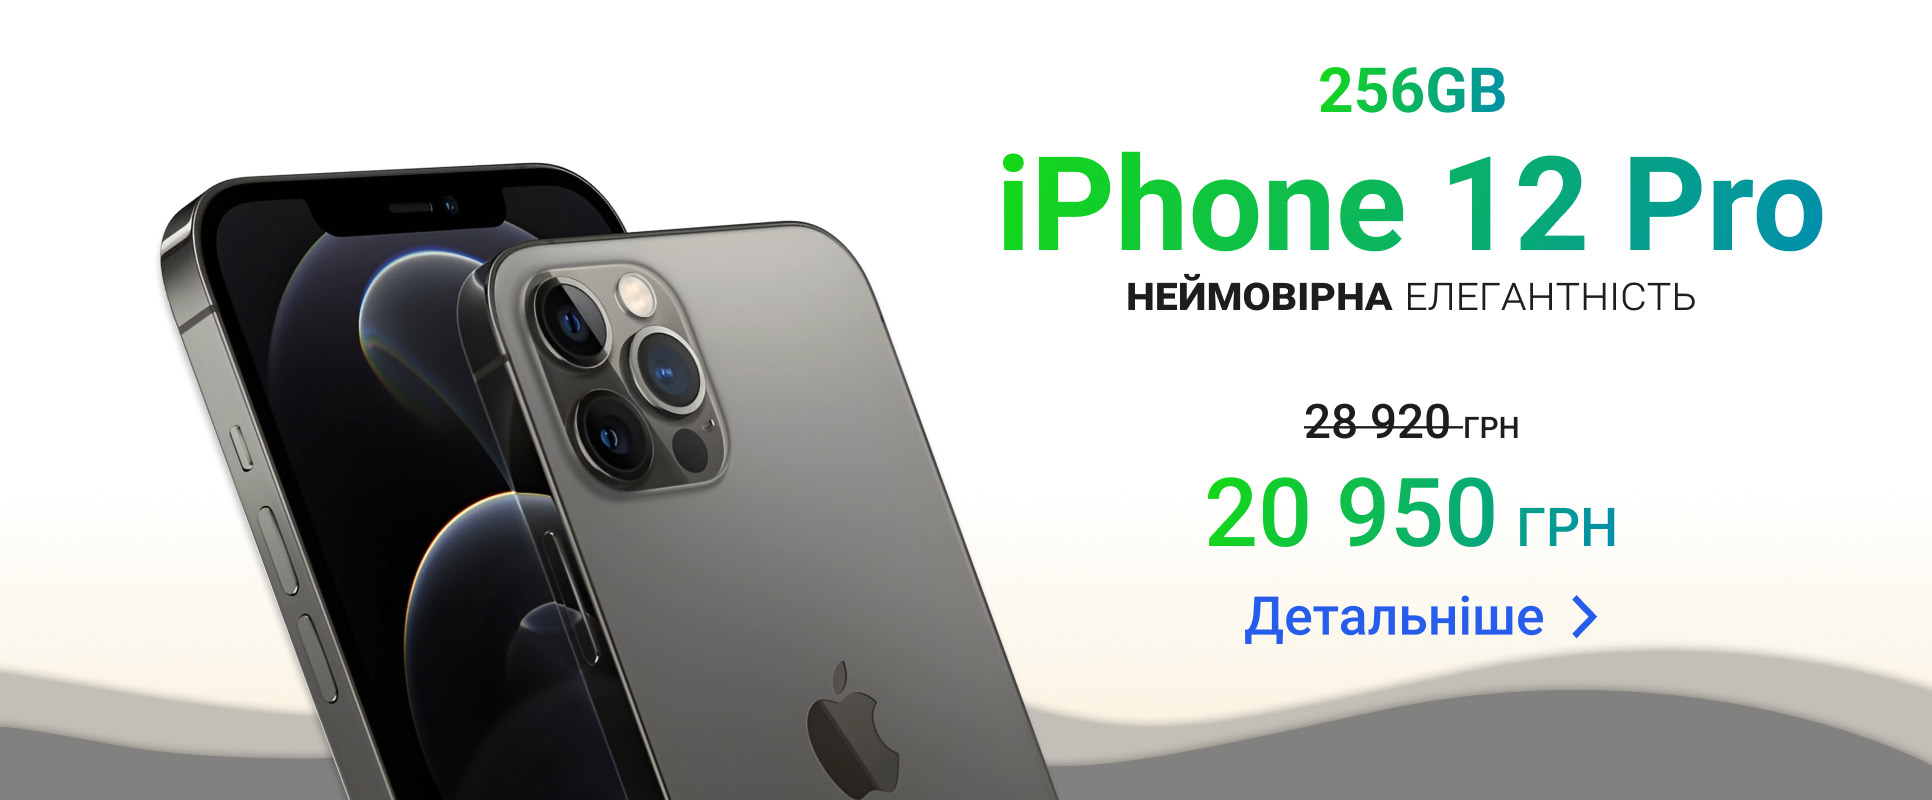 Восстановленные гаджеты с бесплатной гарантией 1 год. Магазин Apple в Киеве  и Украине